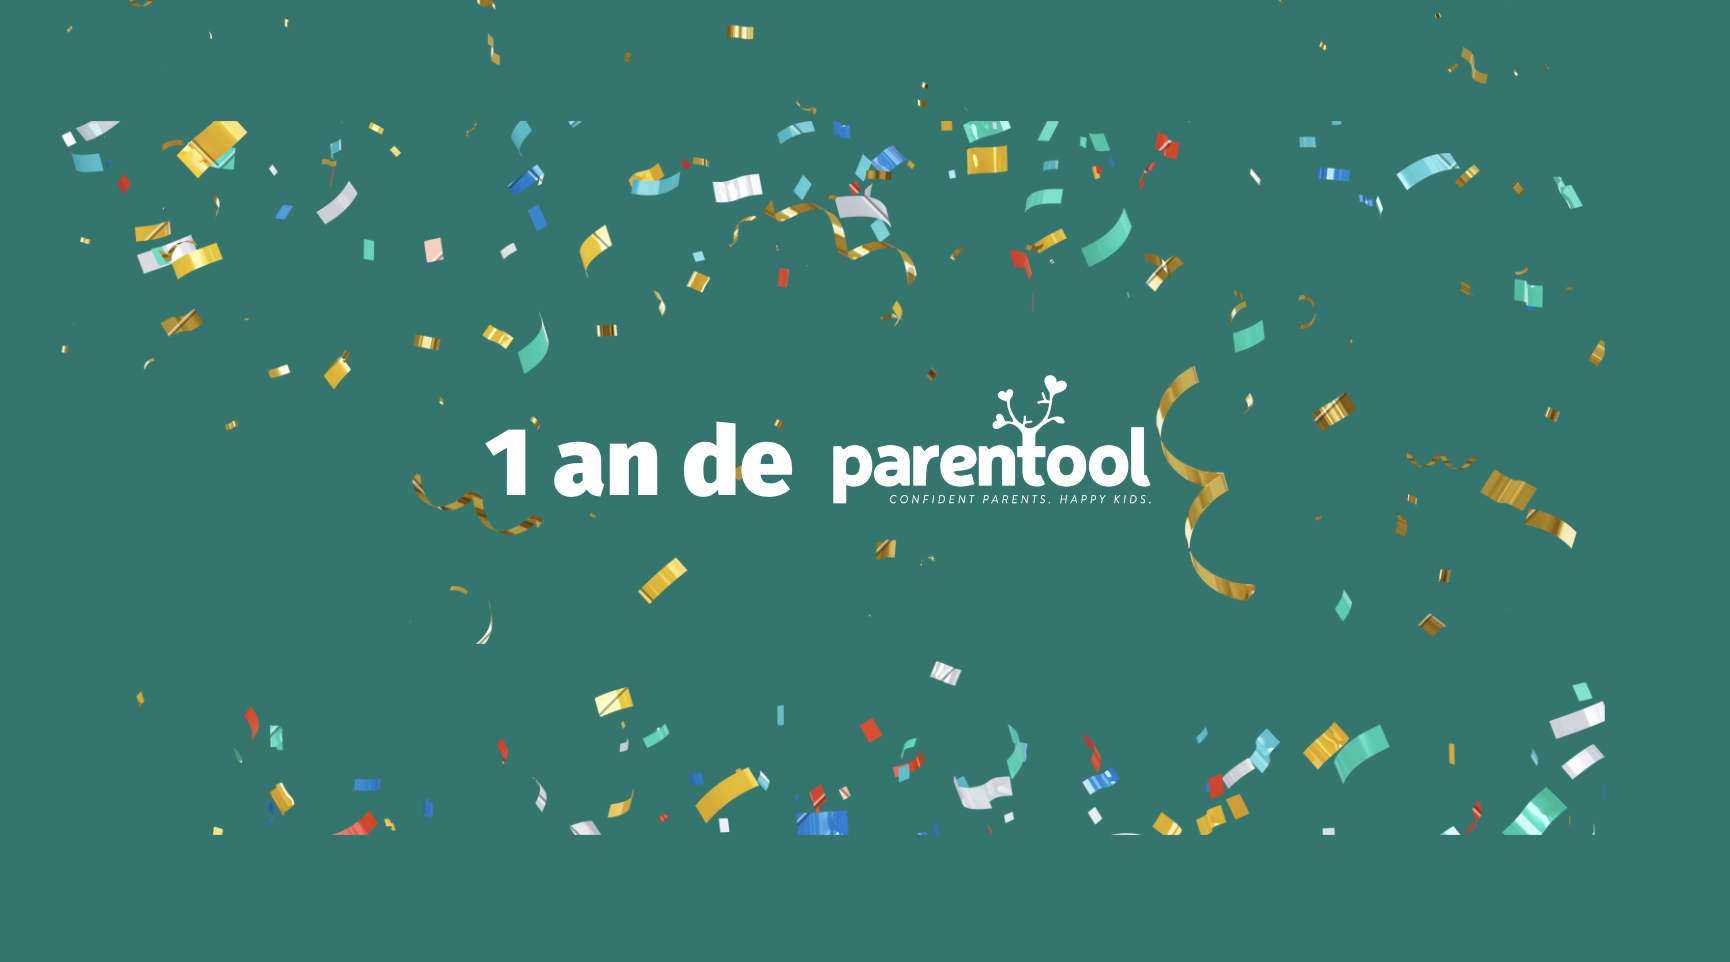 Aniversarea Parentool 1 an de la lansarea aplicatiei